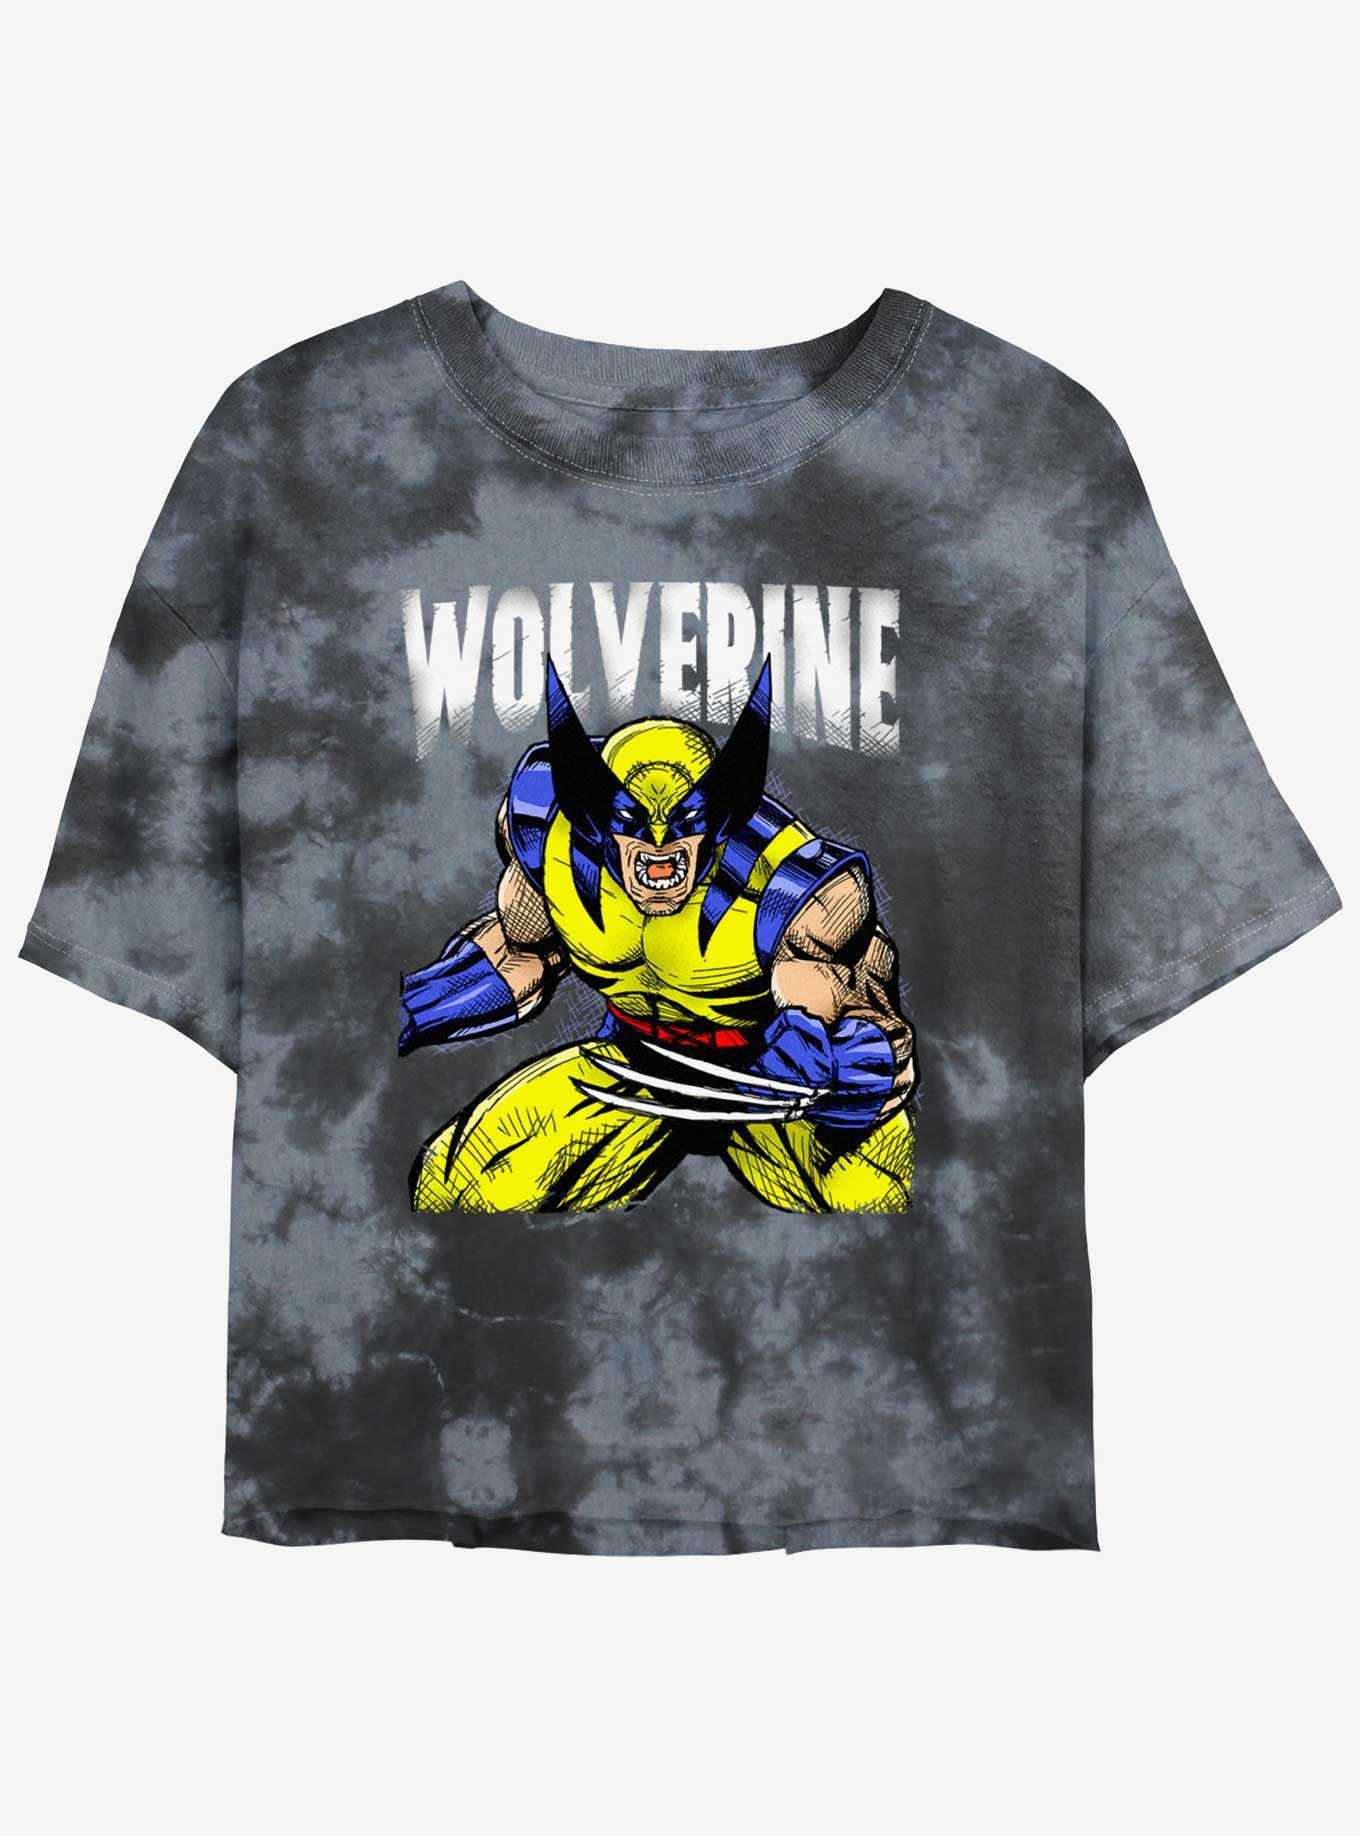 Wolverine Rage On Girls Tie-Dye Crop T-Shirt, , hi-res